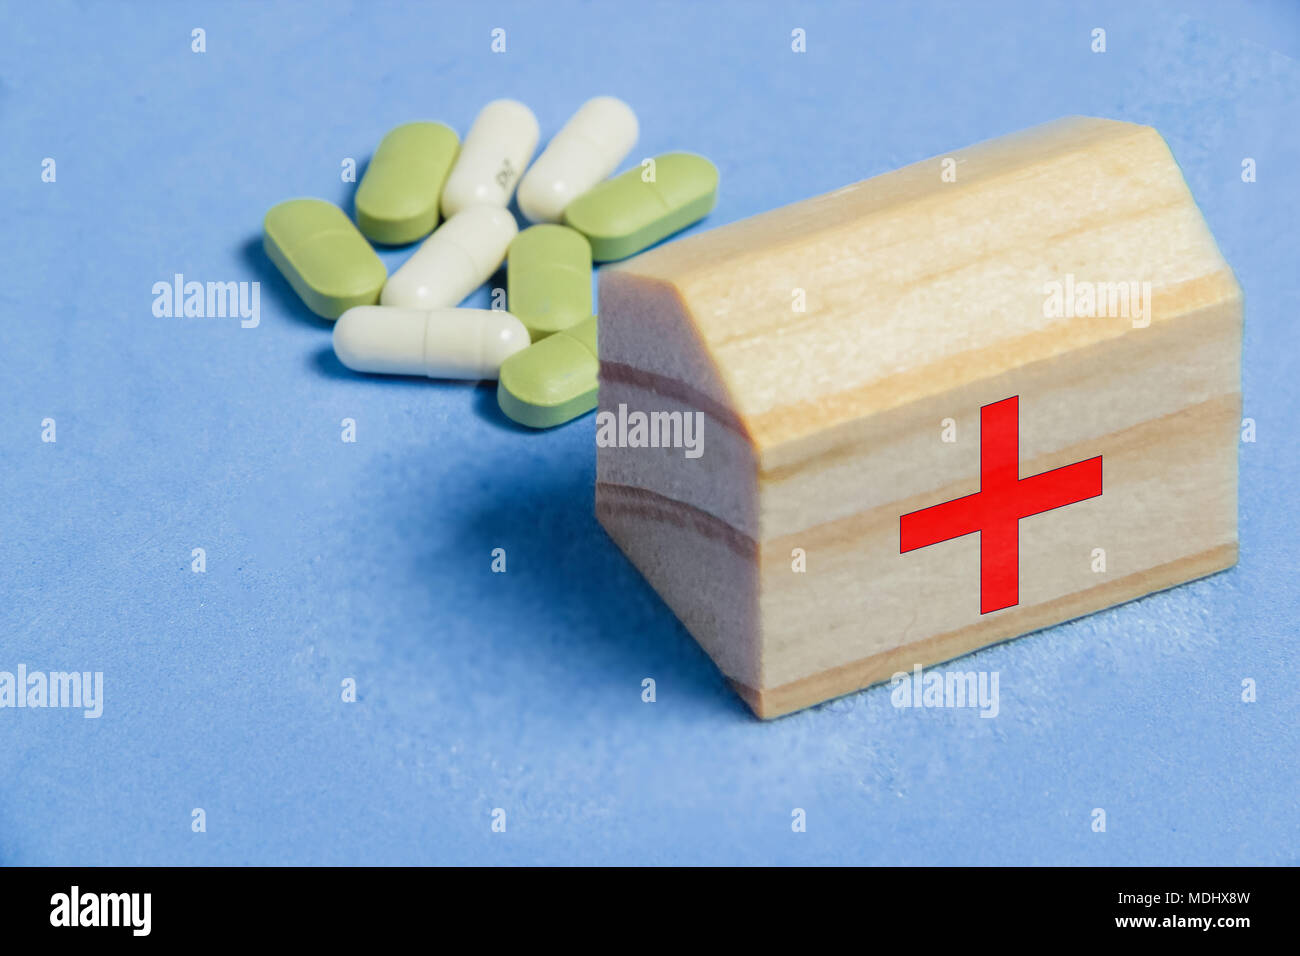 Assortimento di pillole, compresse e capsule su tavolo blu. Medicina ambulanza concetto creativo. Foto Stock